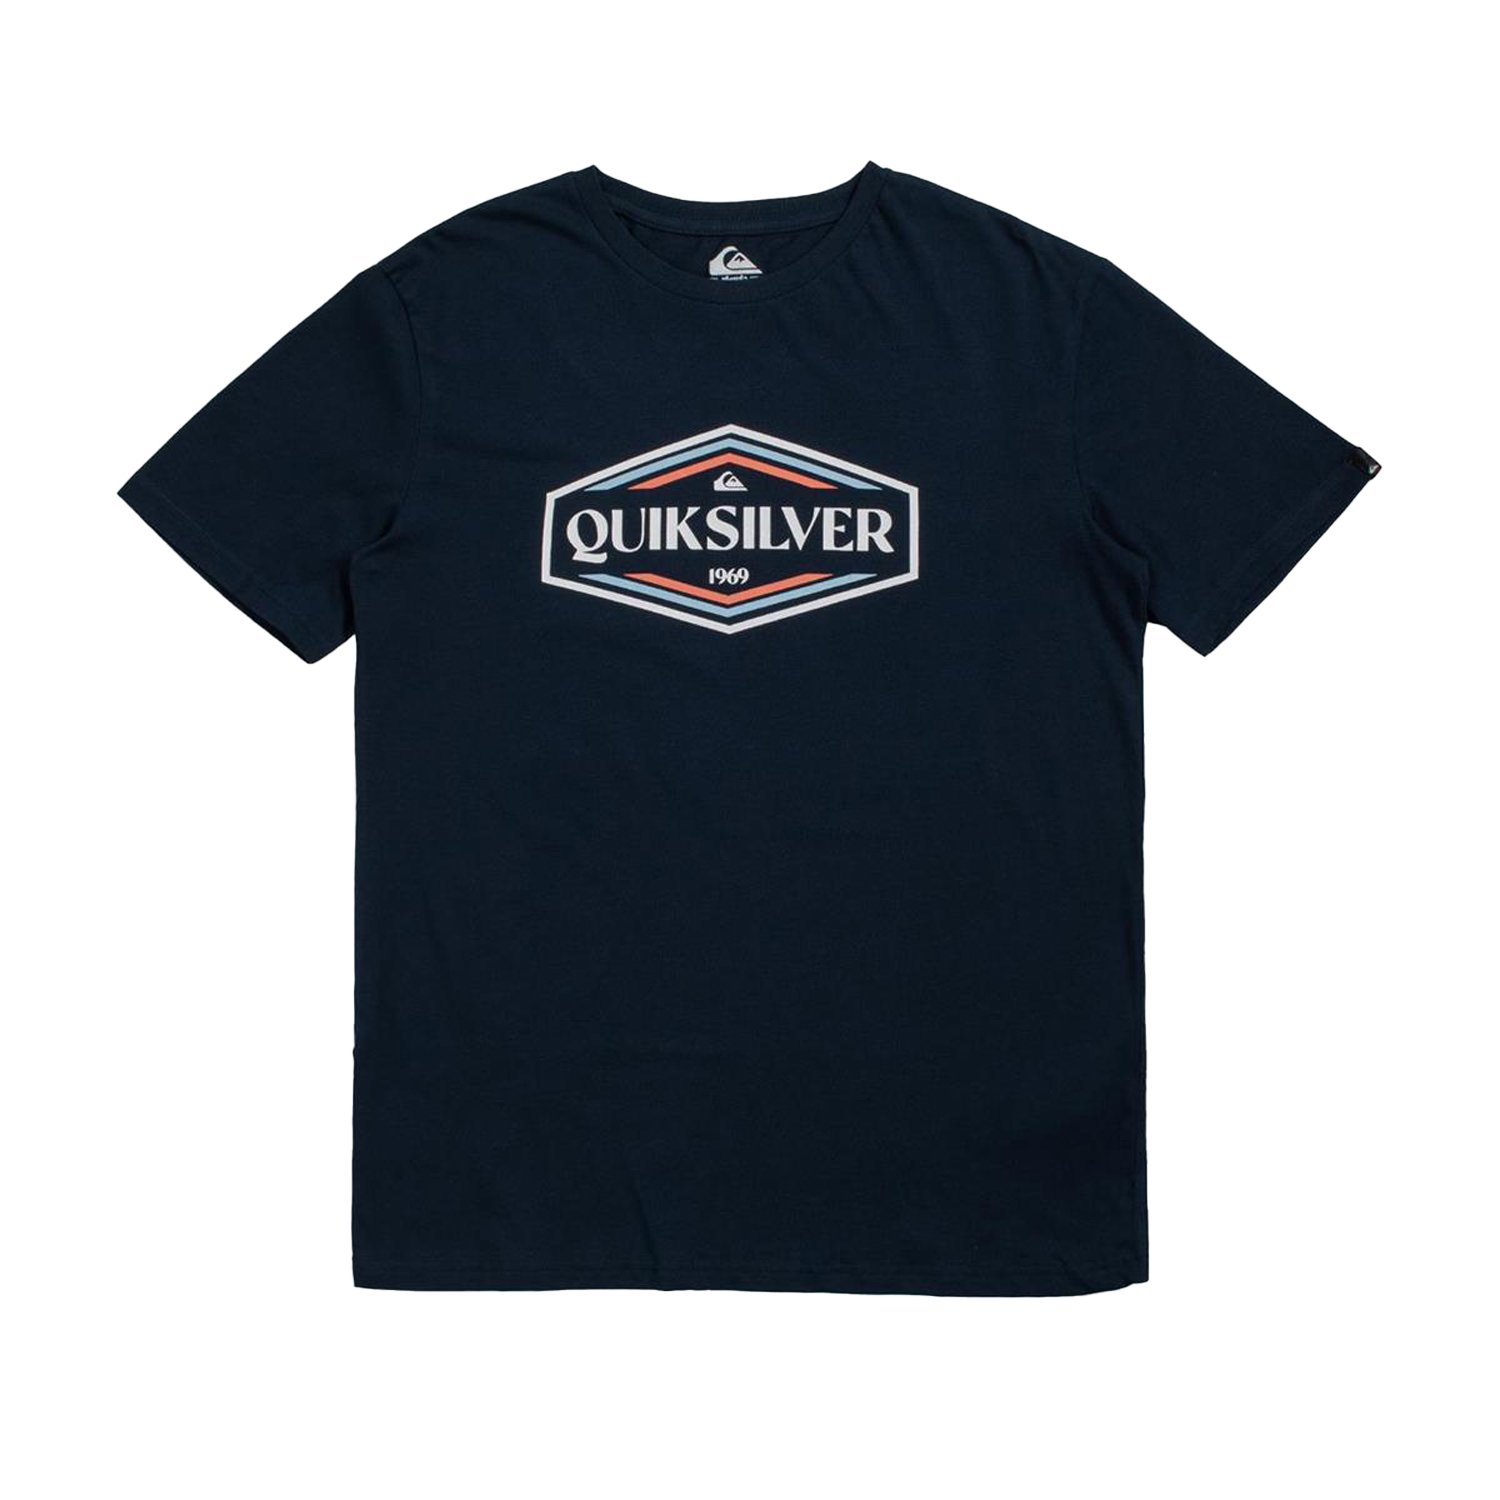 Quiksilver Shapes Up Erkek Tişört - Lacivert - 1